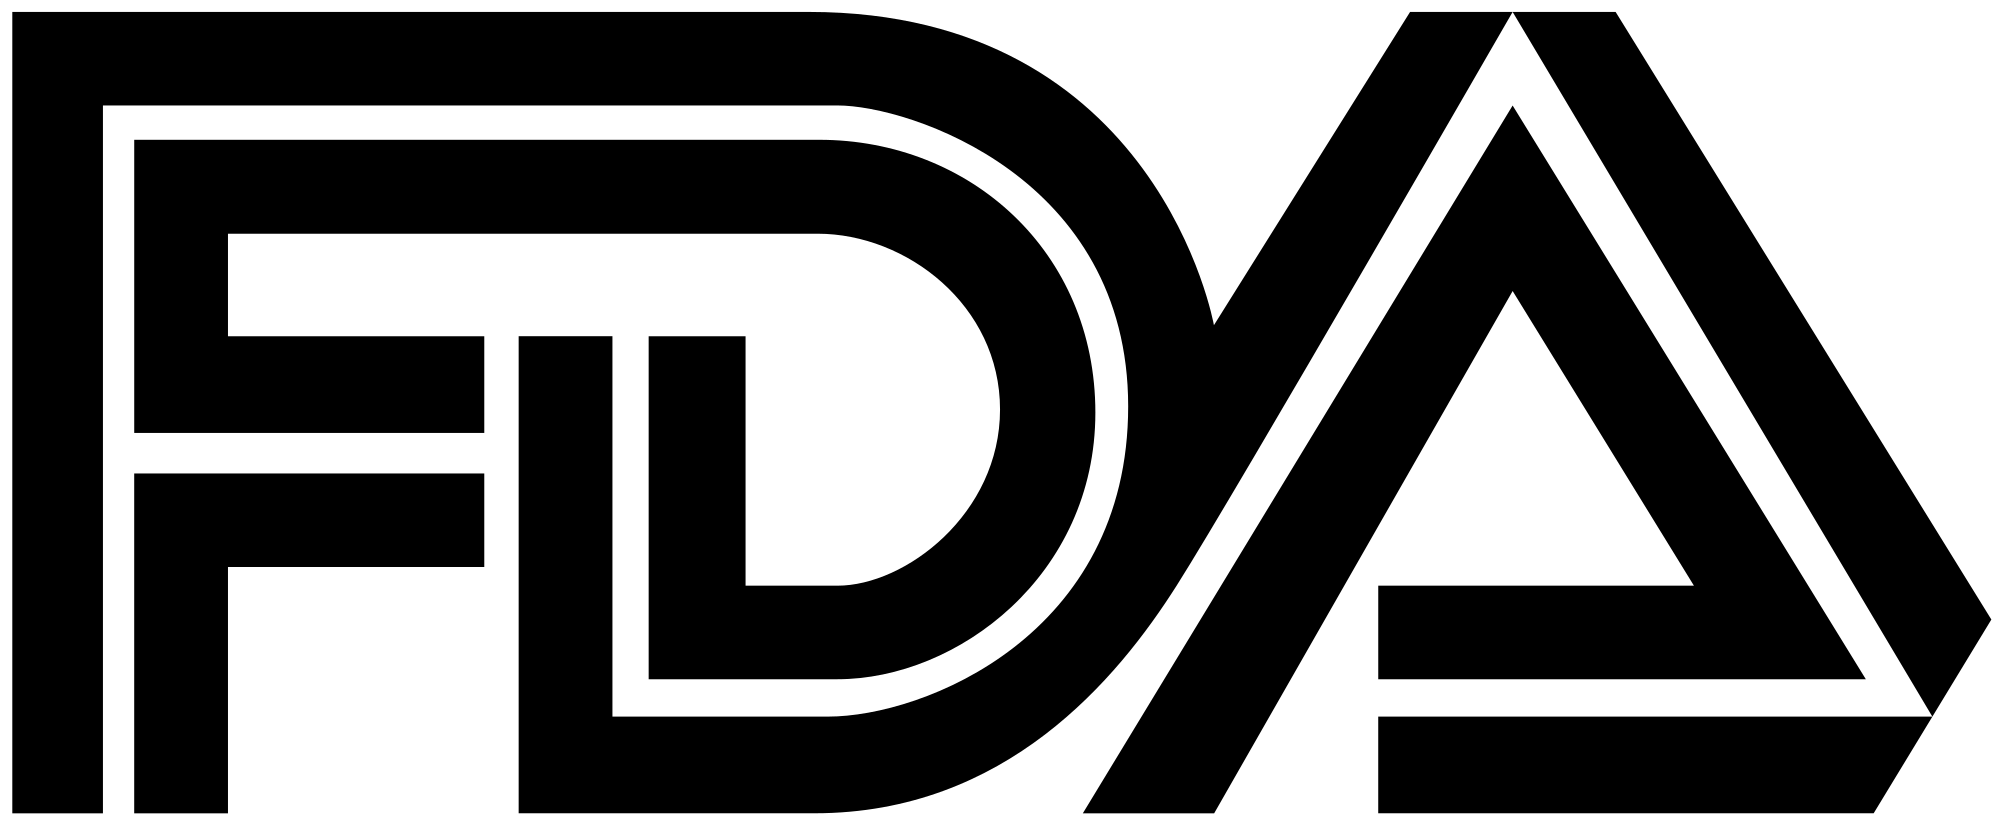 FDA Official Logo - Food and Drug Administration logo.svg